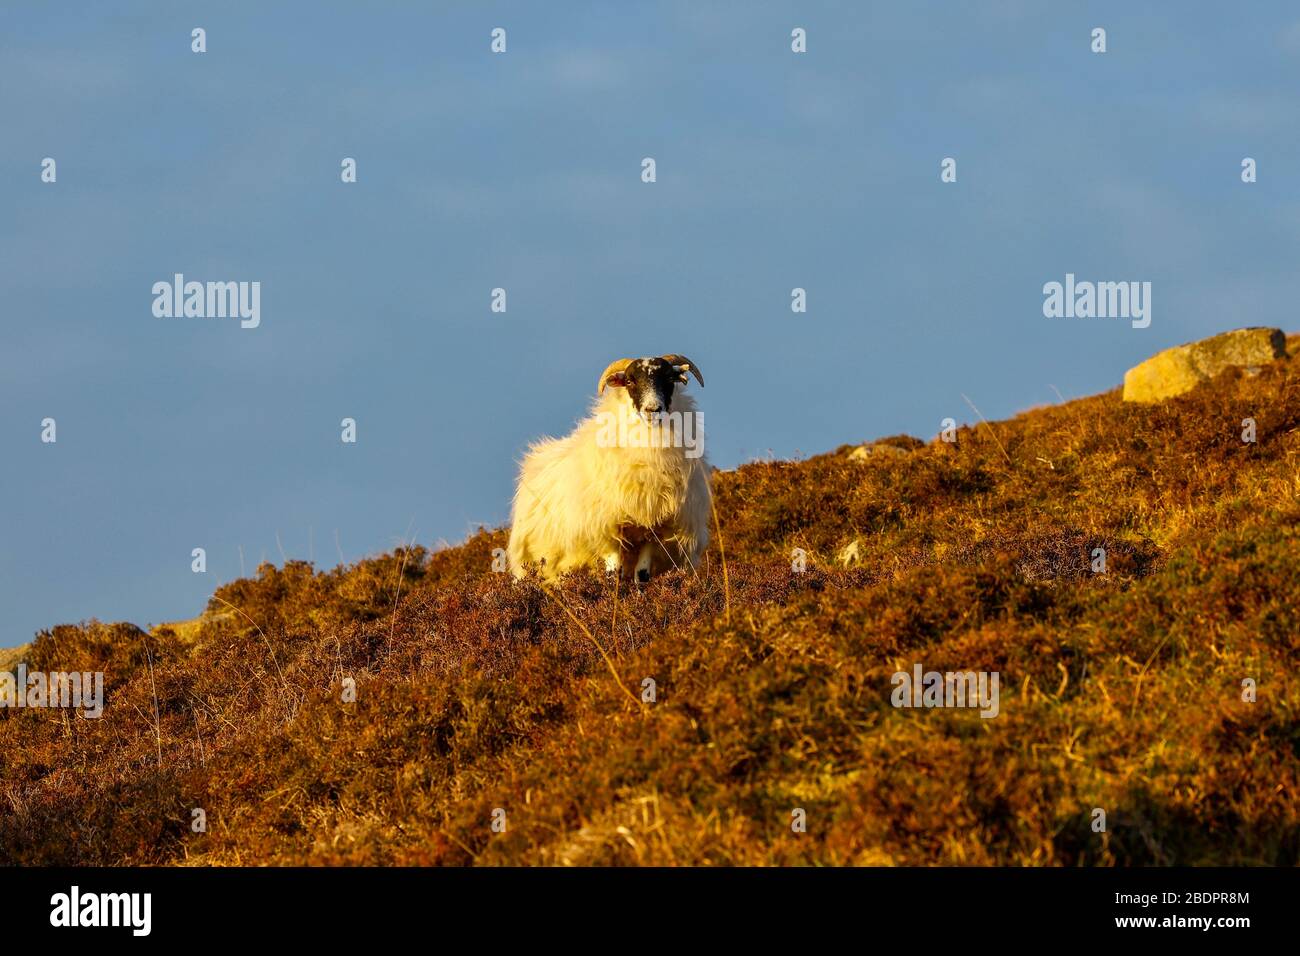 Abendsonne auf einem einhornigen Schaf, das in einem Heidefeld auf der Seite eines Hügels steht, den Betrachter direkt anblickend, mit einem blauen Himmel-Rückzieher Stockfoto